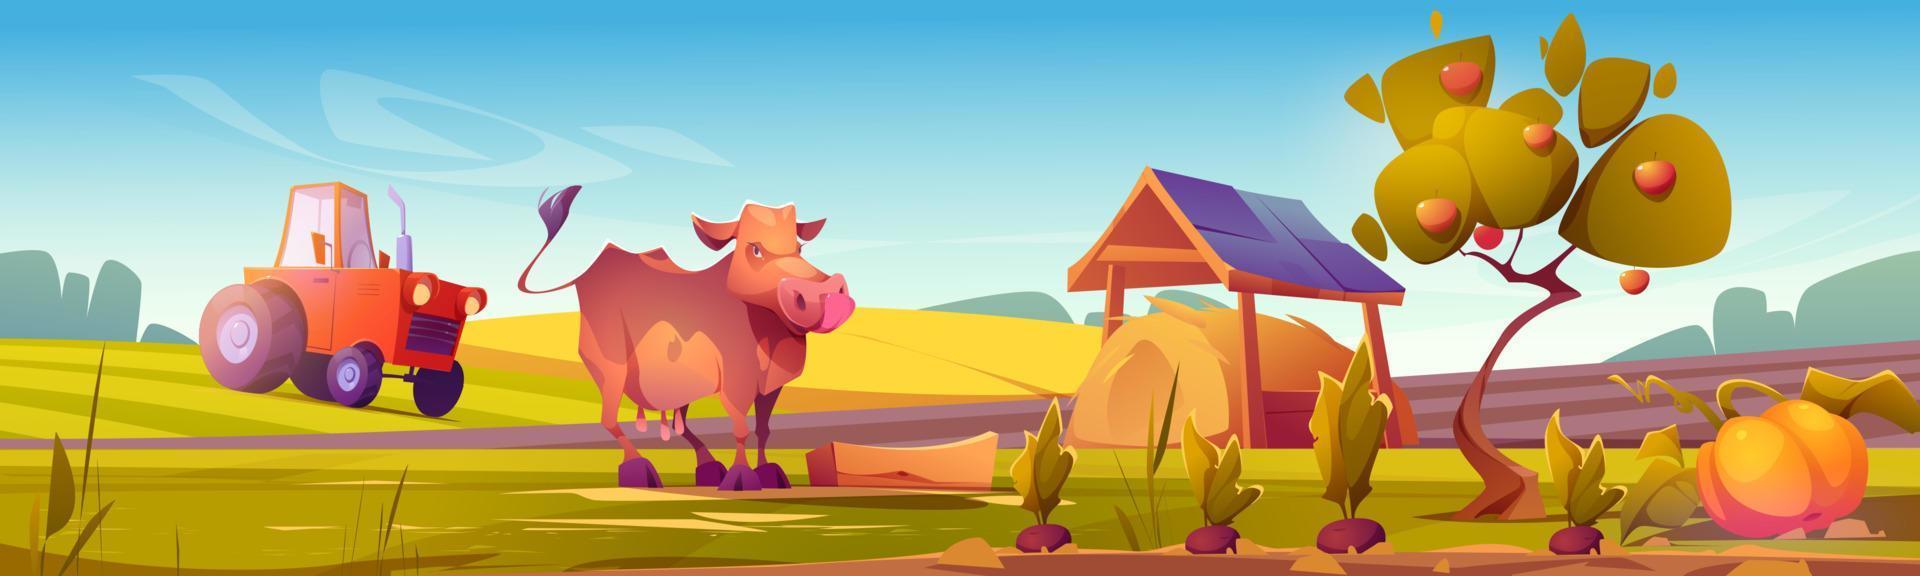 cena do campo com vaca, campo de fazenda e trator vetor